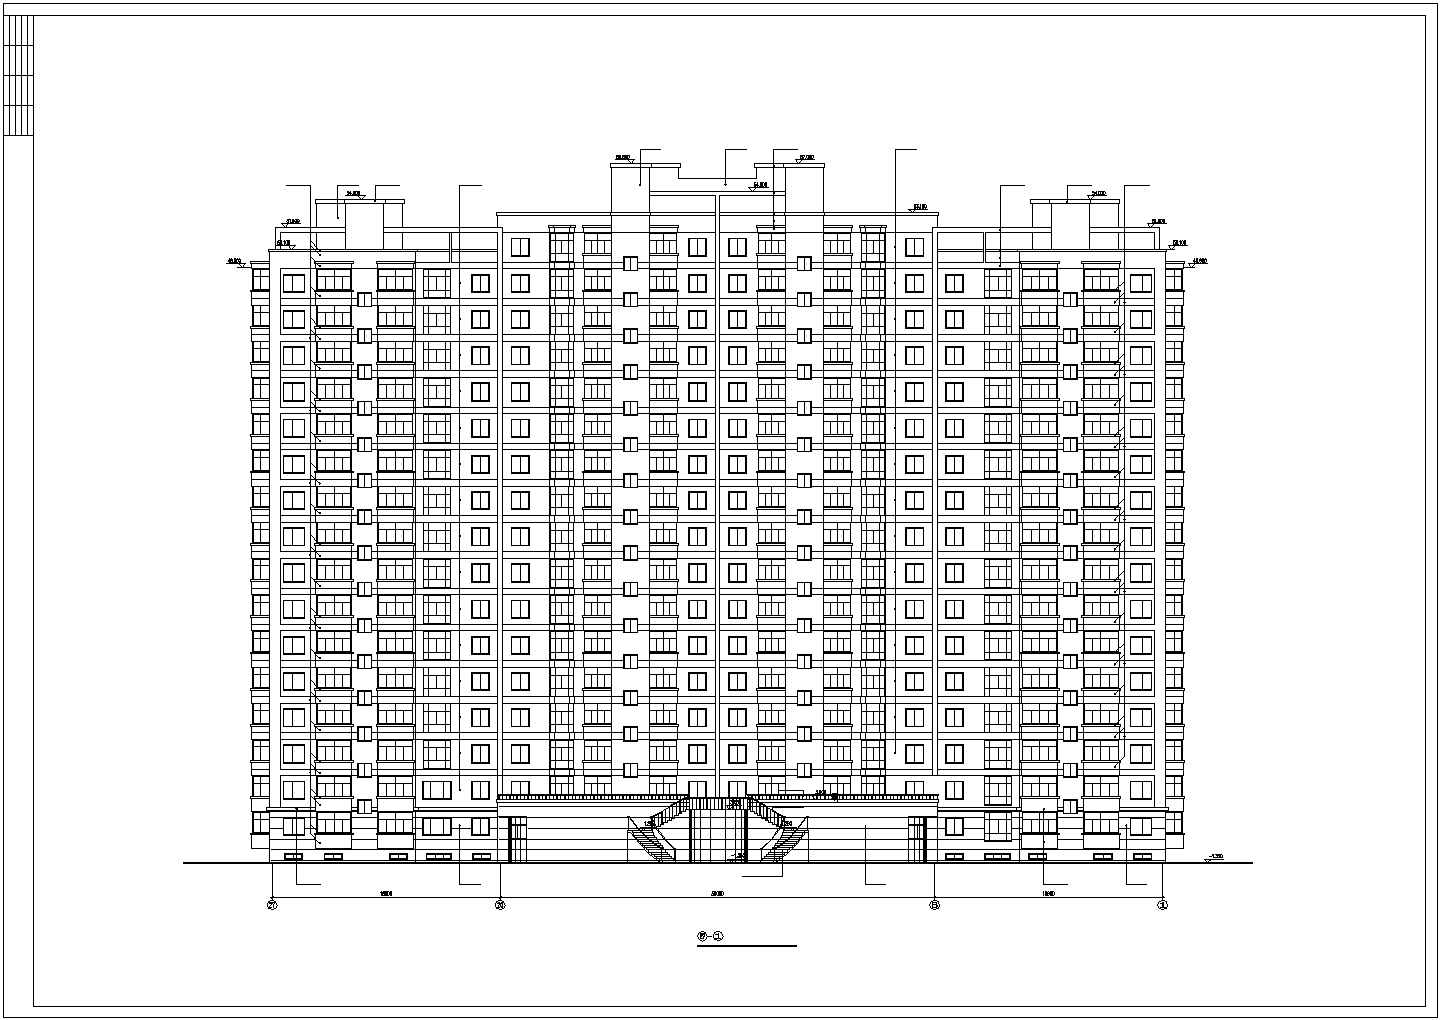 哈尔某房地产开发公司开发休息小区6#住宅楼施工图